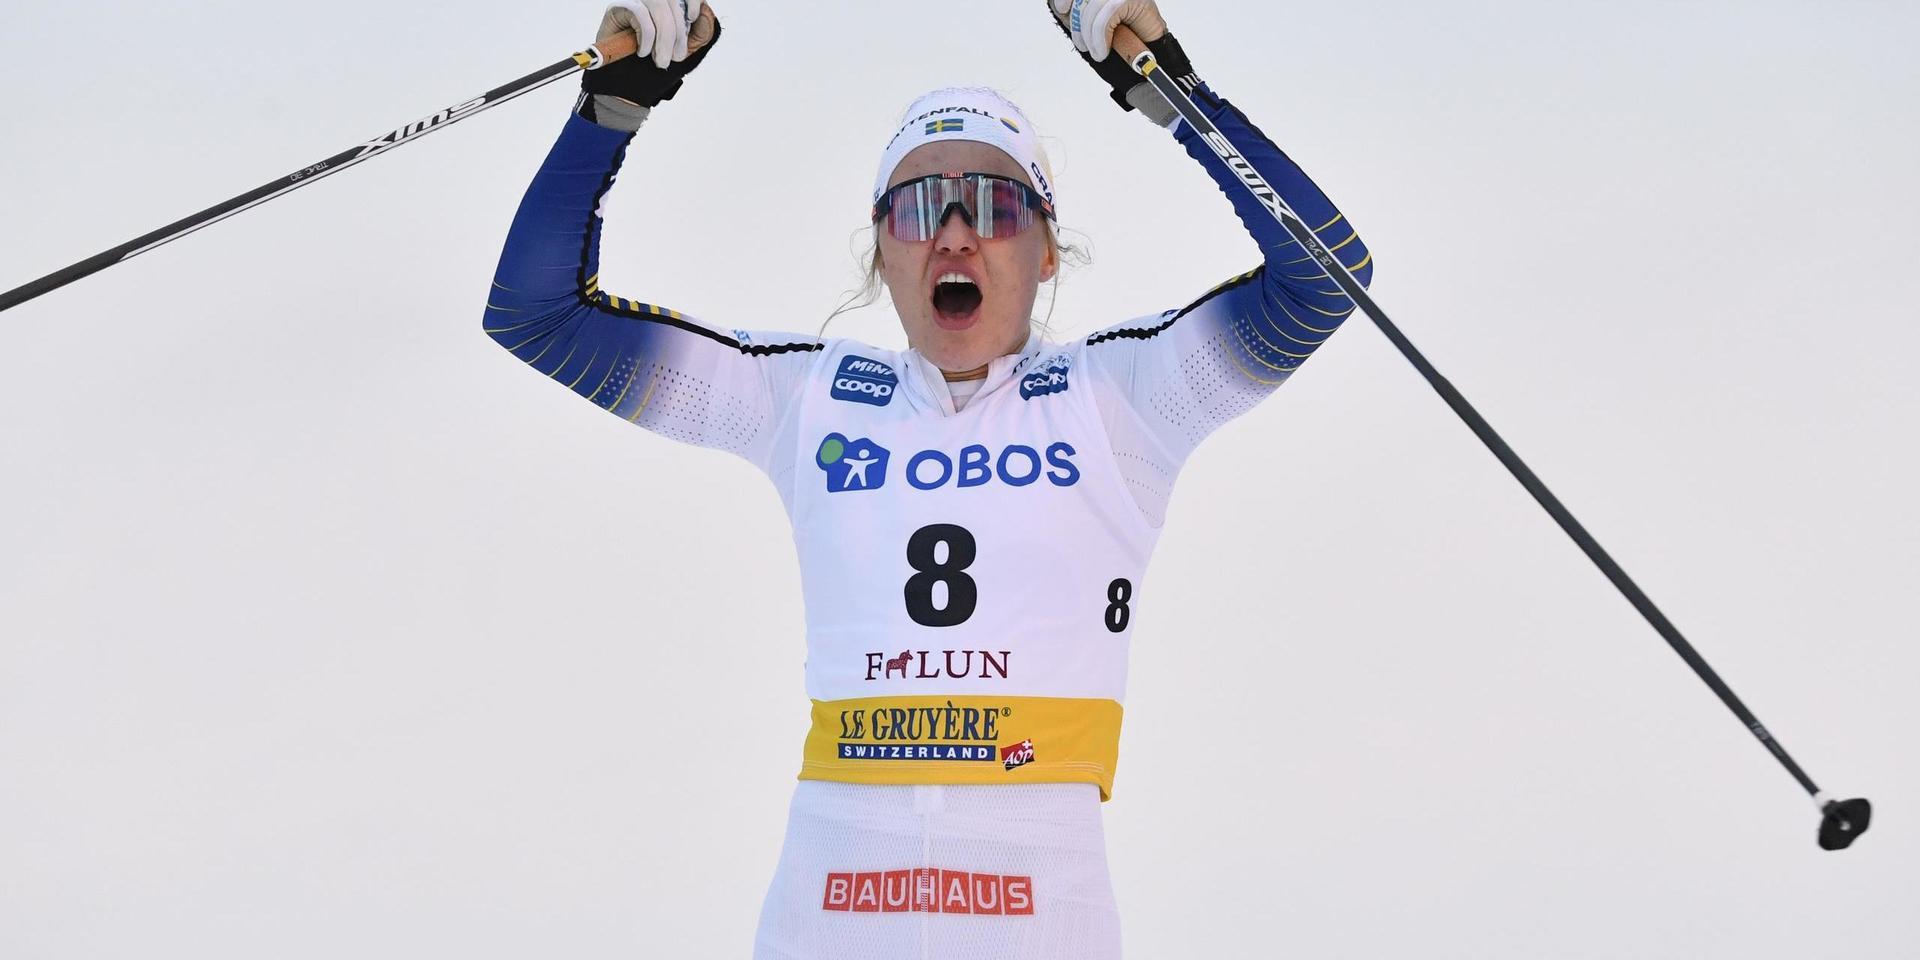 Den regerande världscupvinnaren i sprint, Linn Svahn, kan se fram emot tävlingar i Ulricehamn i januari. Arkivbild.